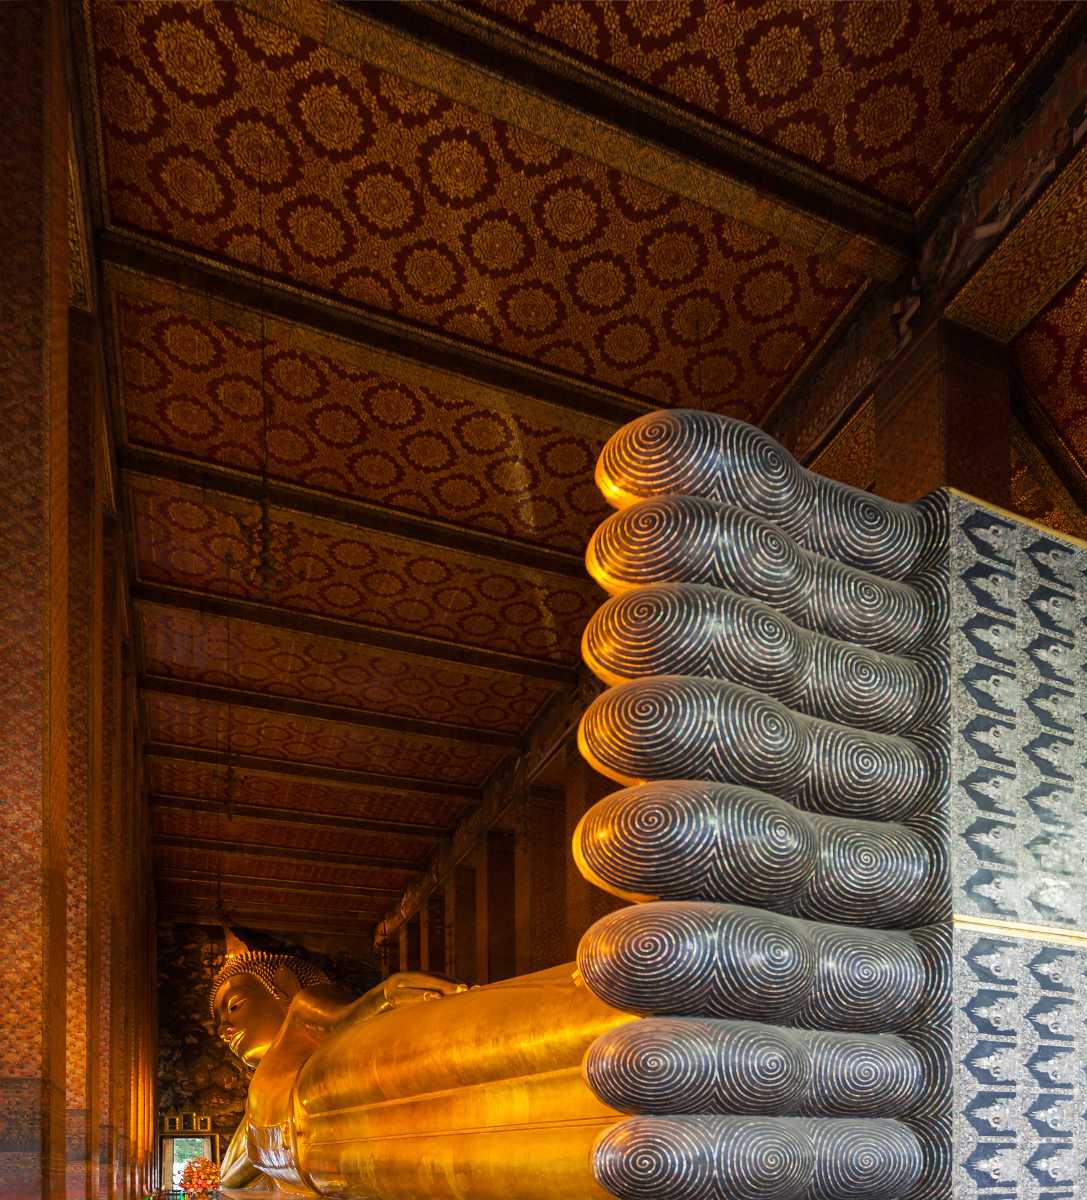 The Reclining Buddha at Wat Pho